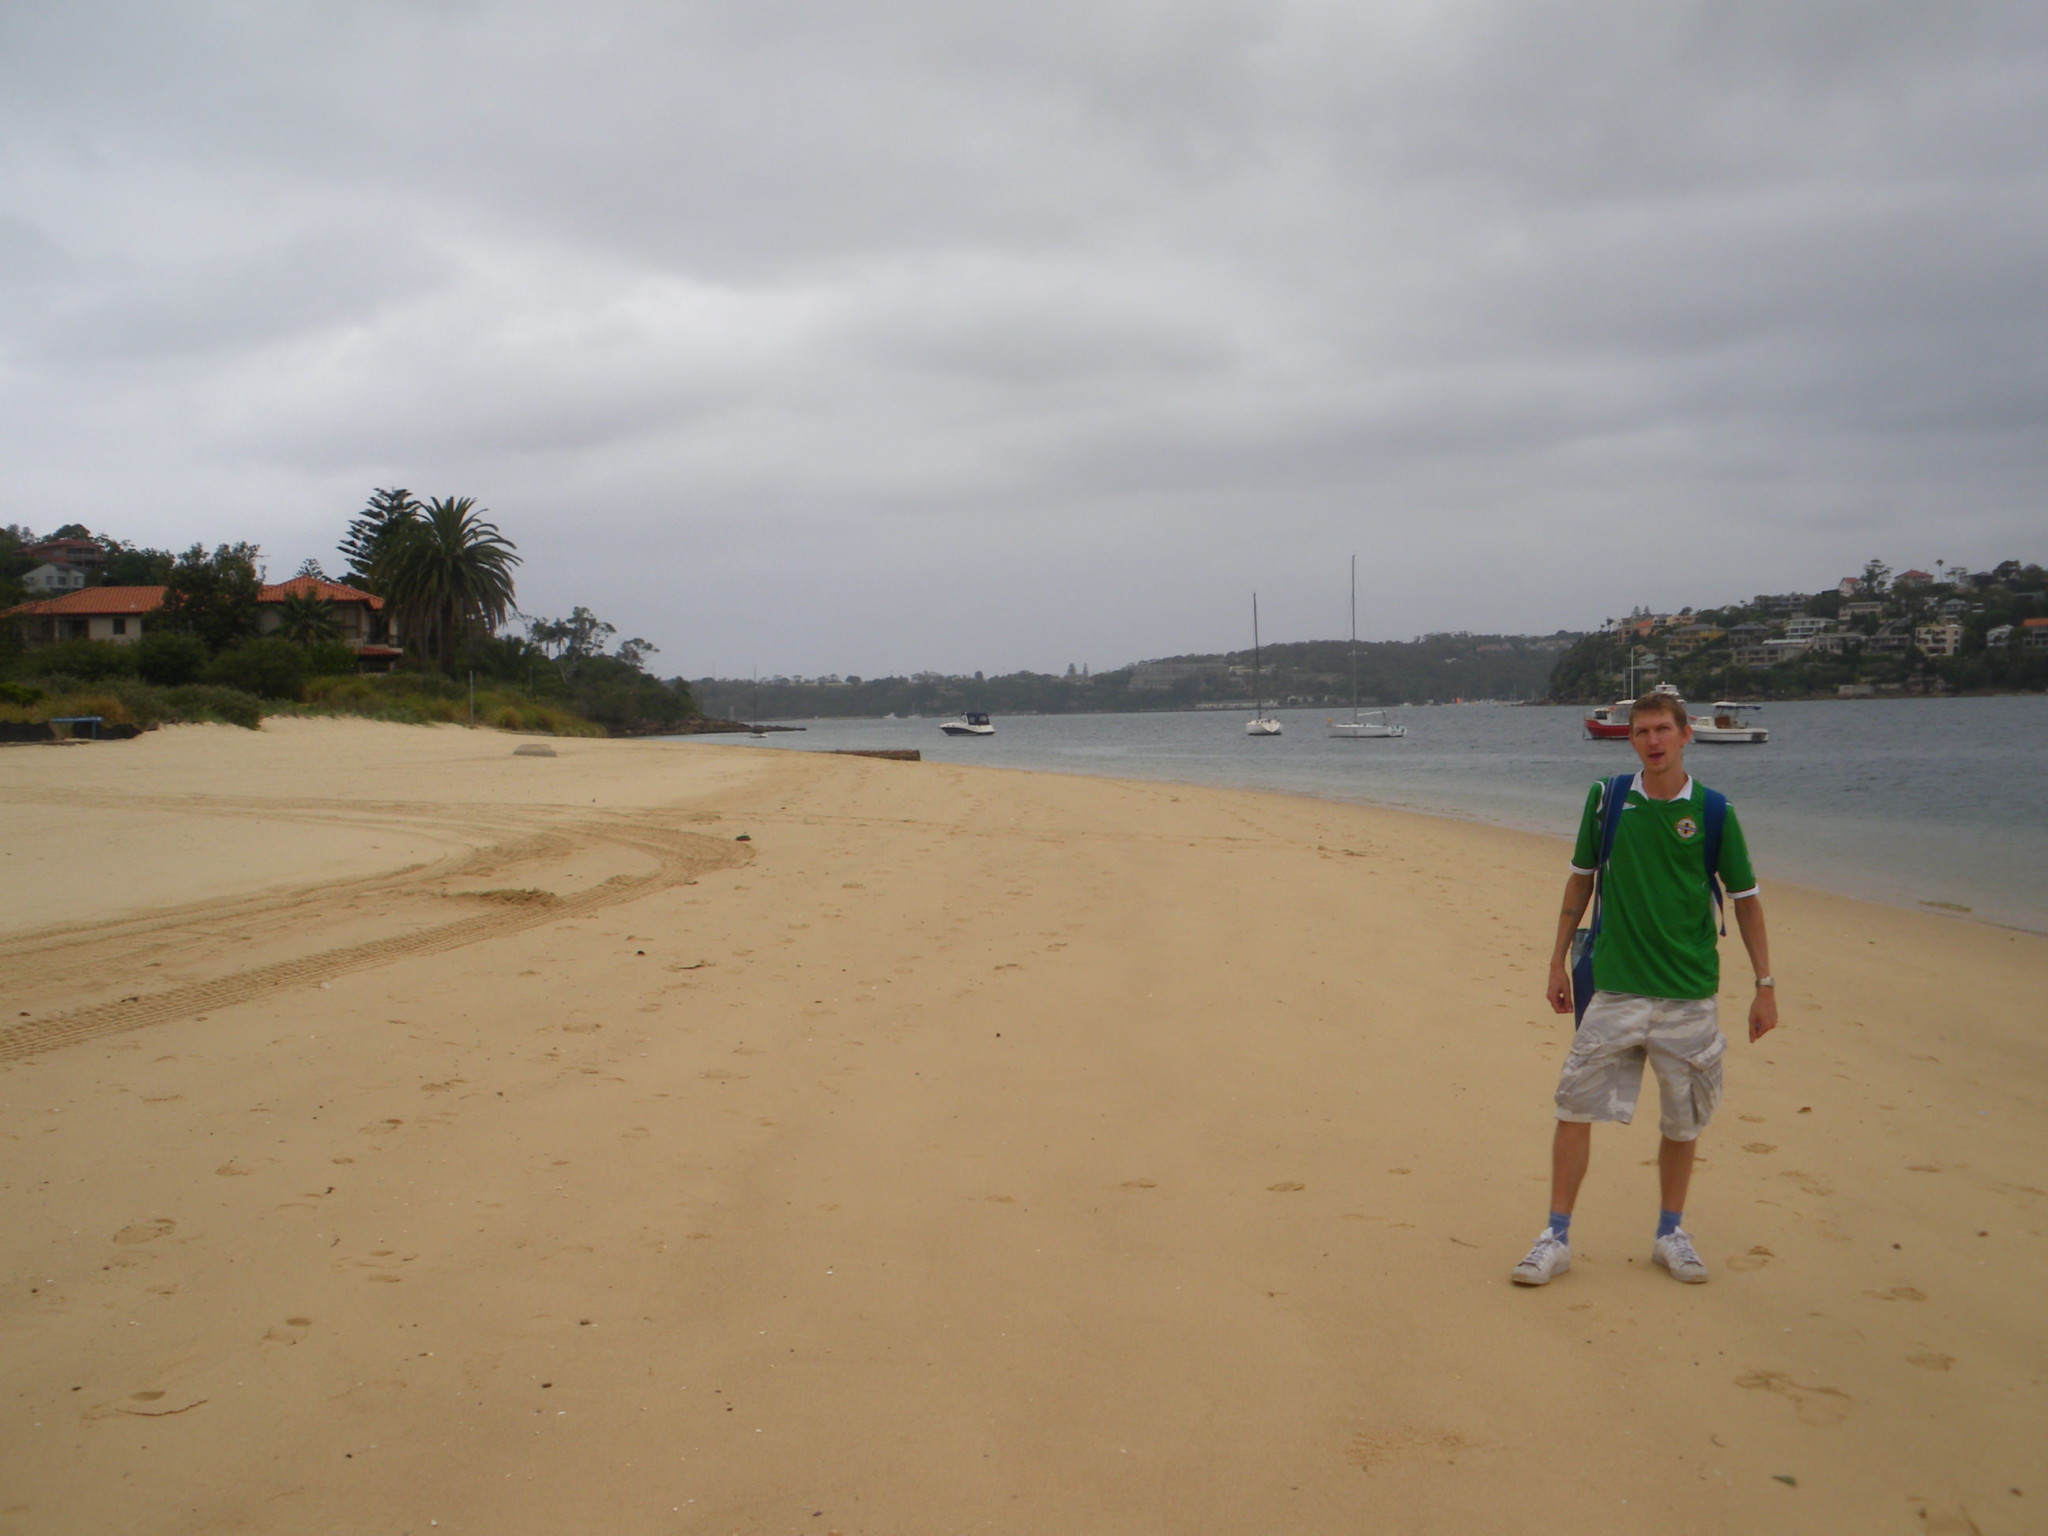 Jonny Blair on Clontarf Beach, Sydney, Australia